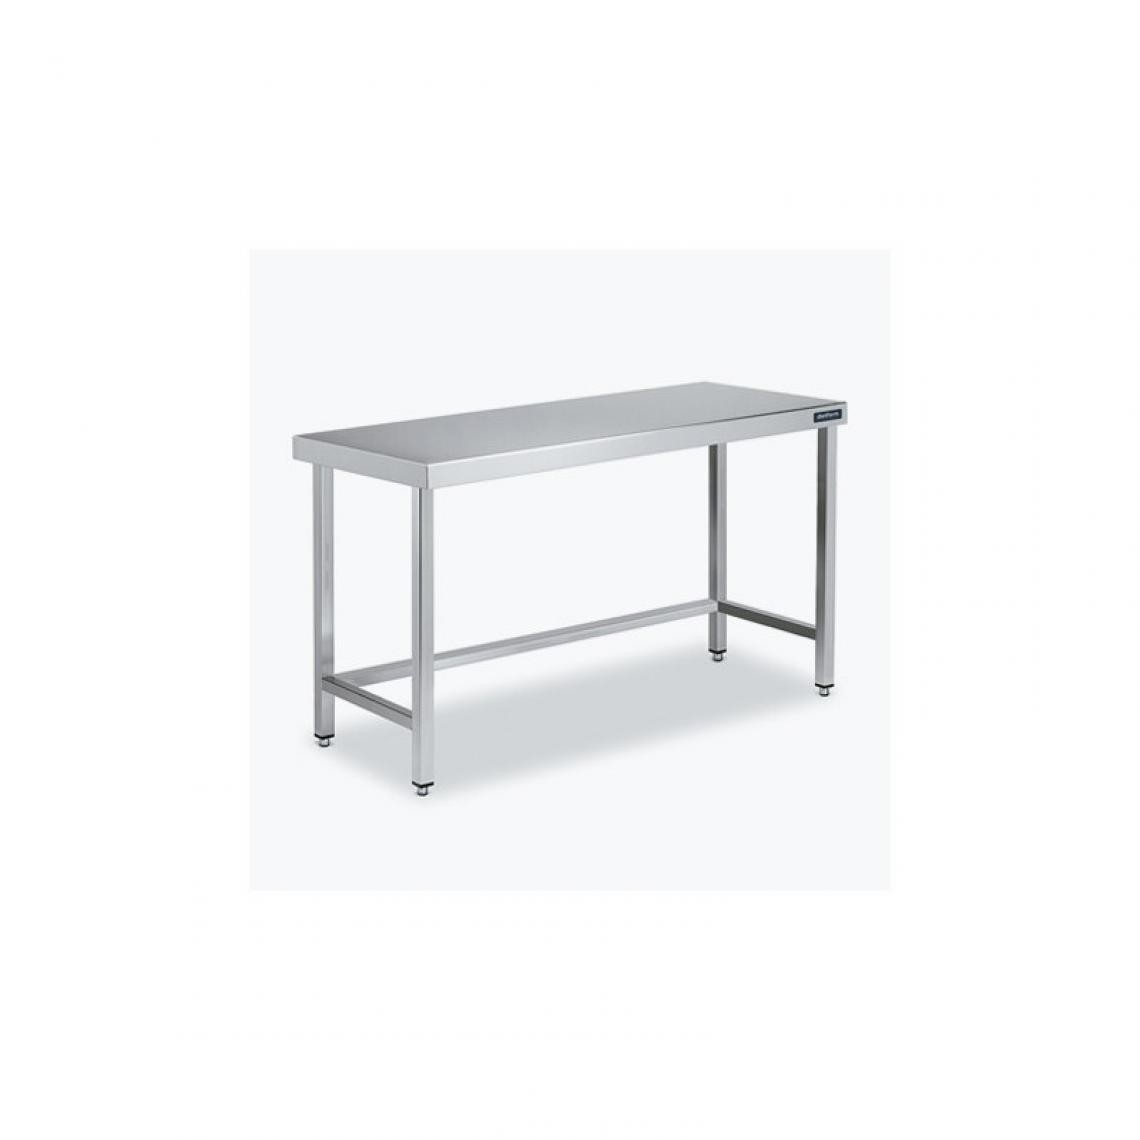 DISTFORM - Table Centrale 600x800 avec Renforts - Distform - Inox 18/101400x800x850mm - Tables à manger